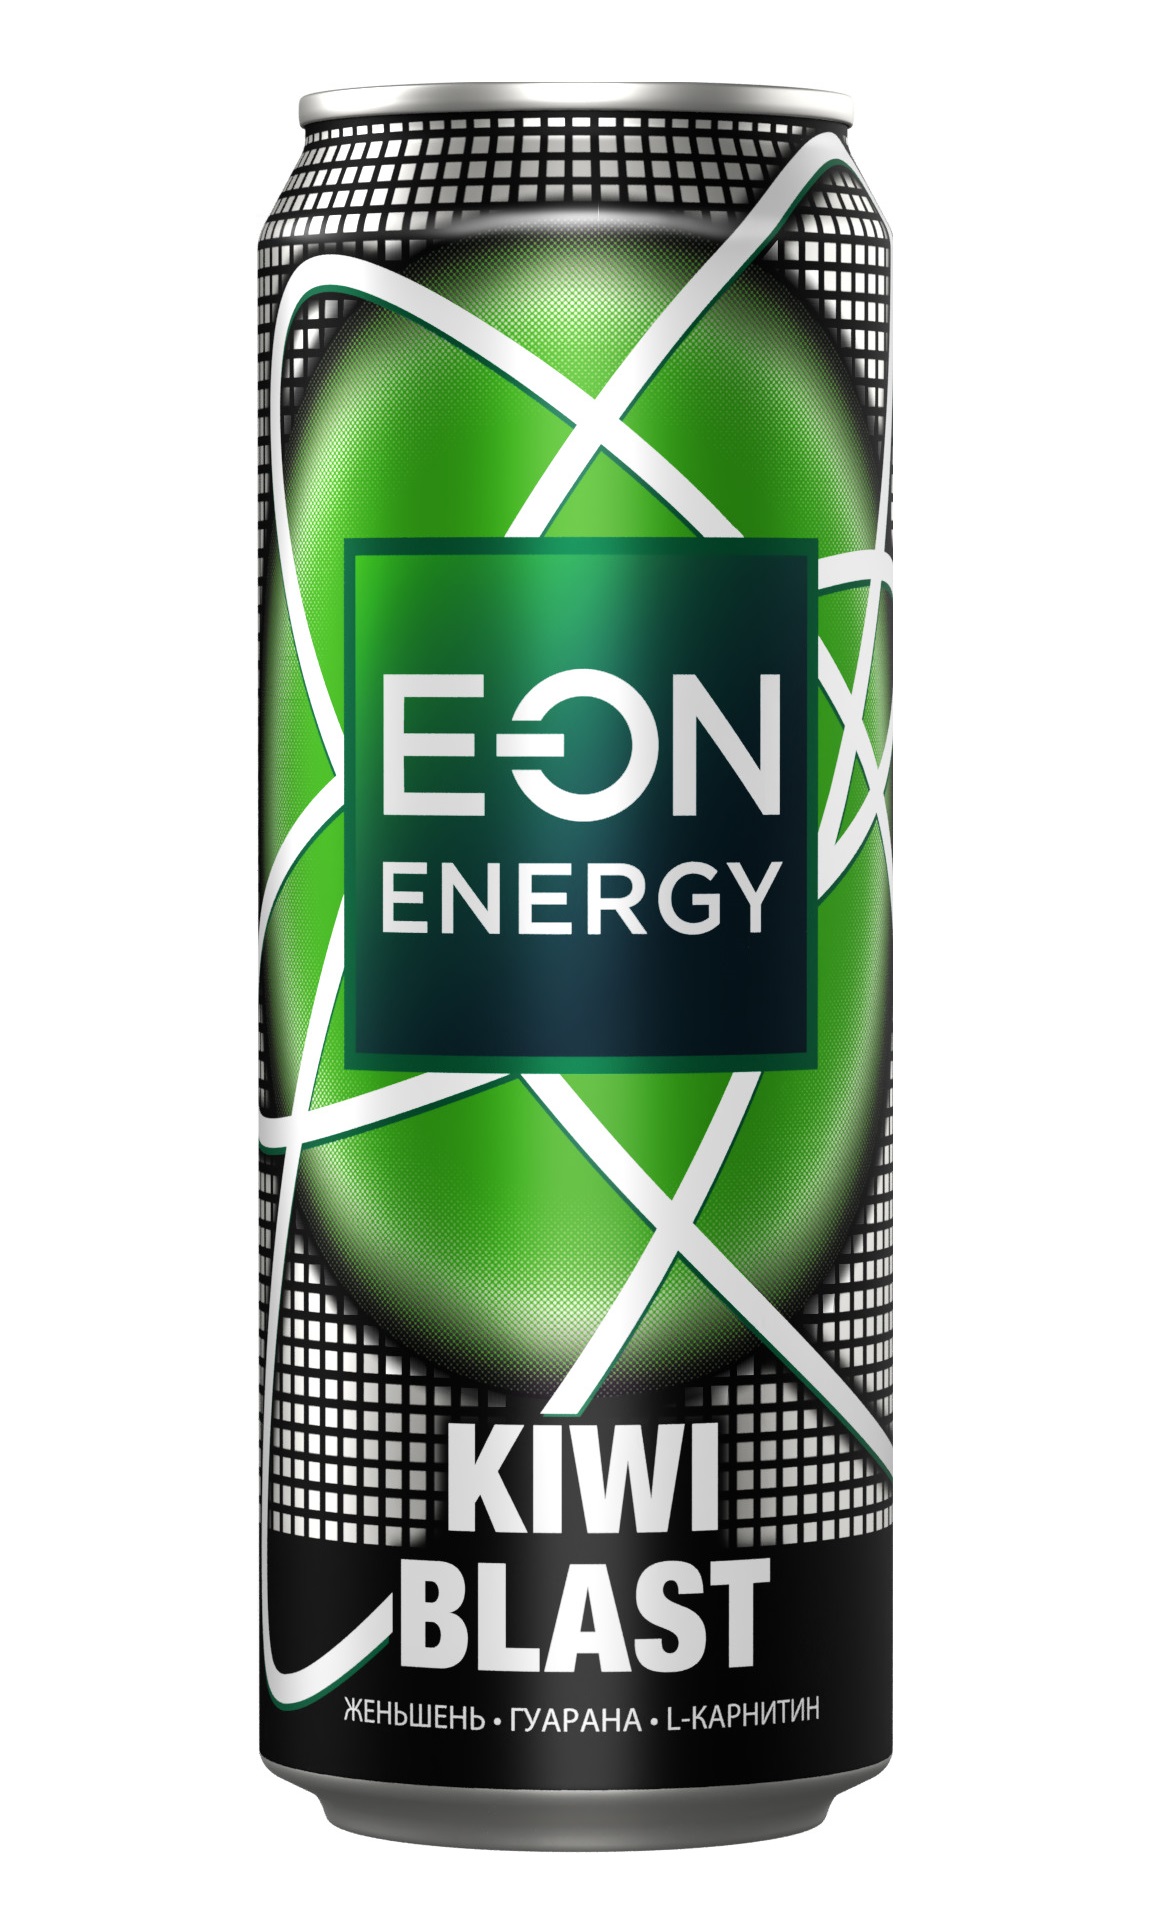 Напиток энергетический E-On Kiwi Blast газированный, безалкогольный, 450 мл